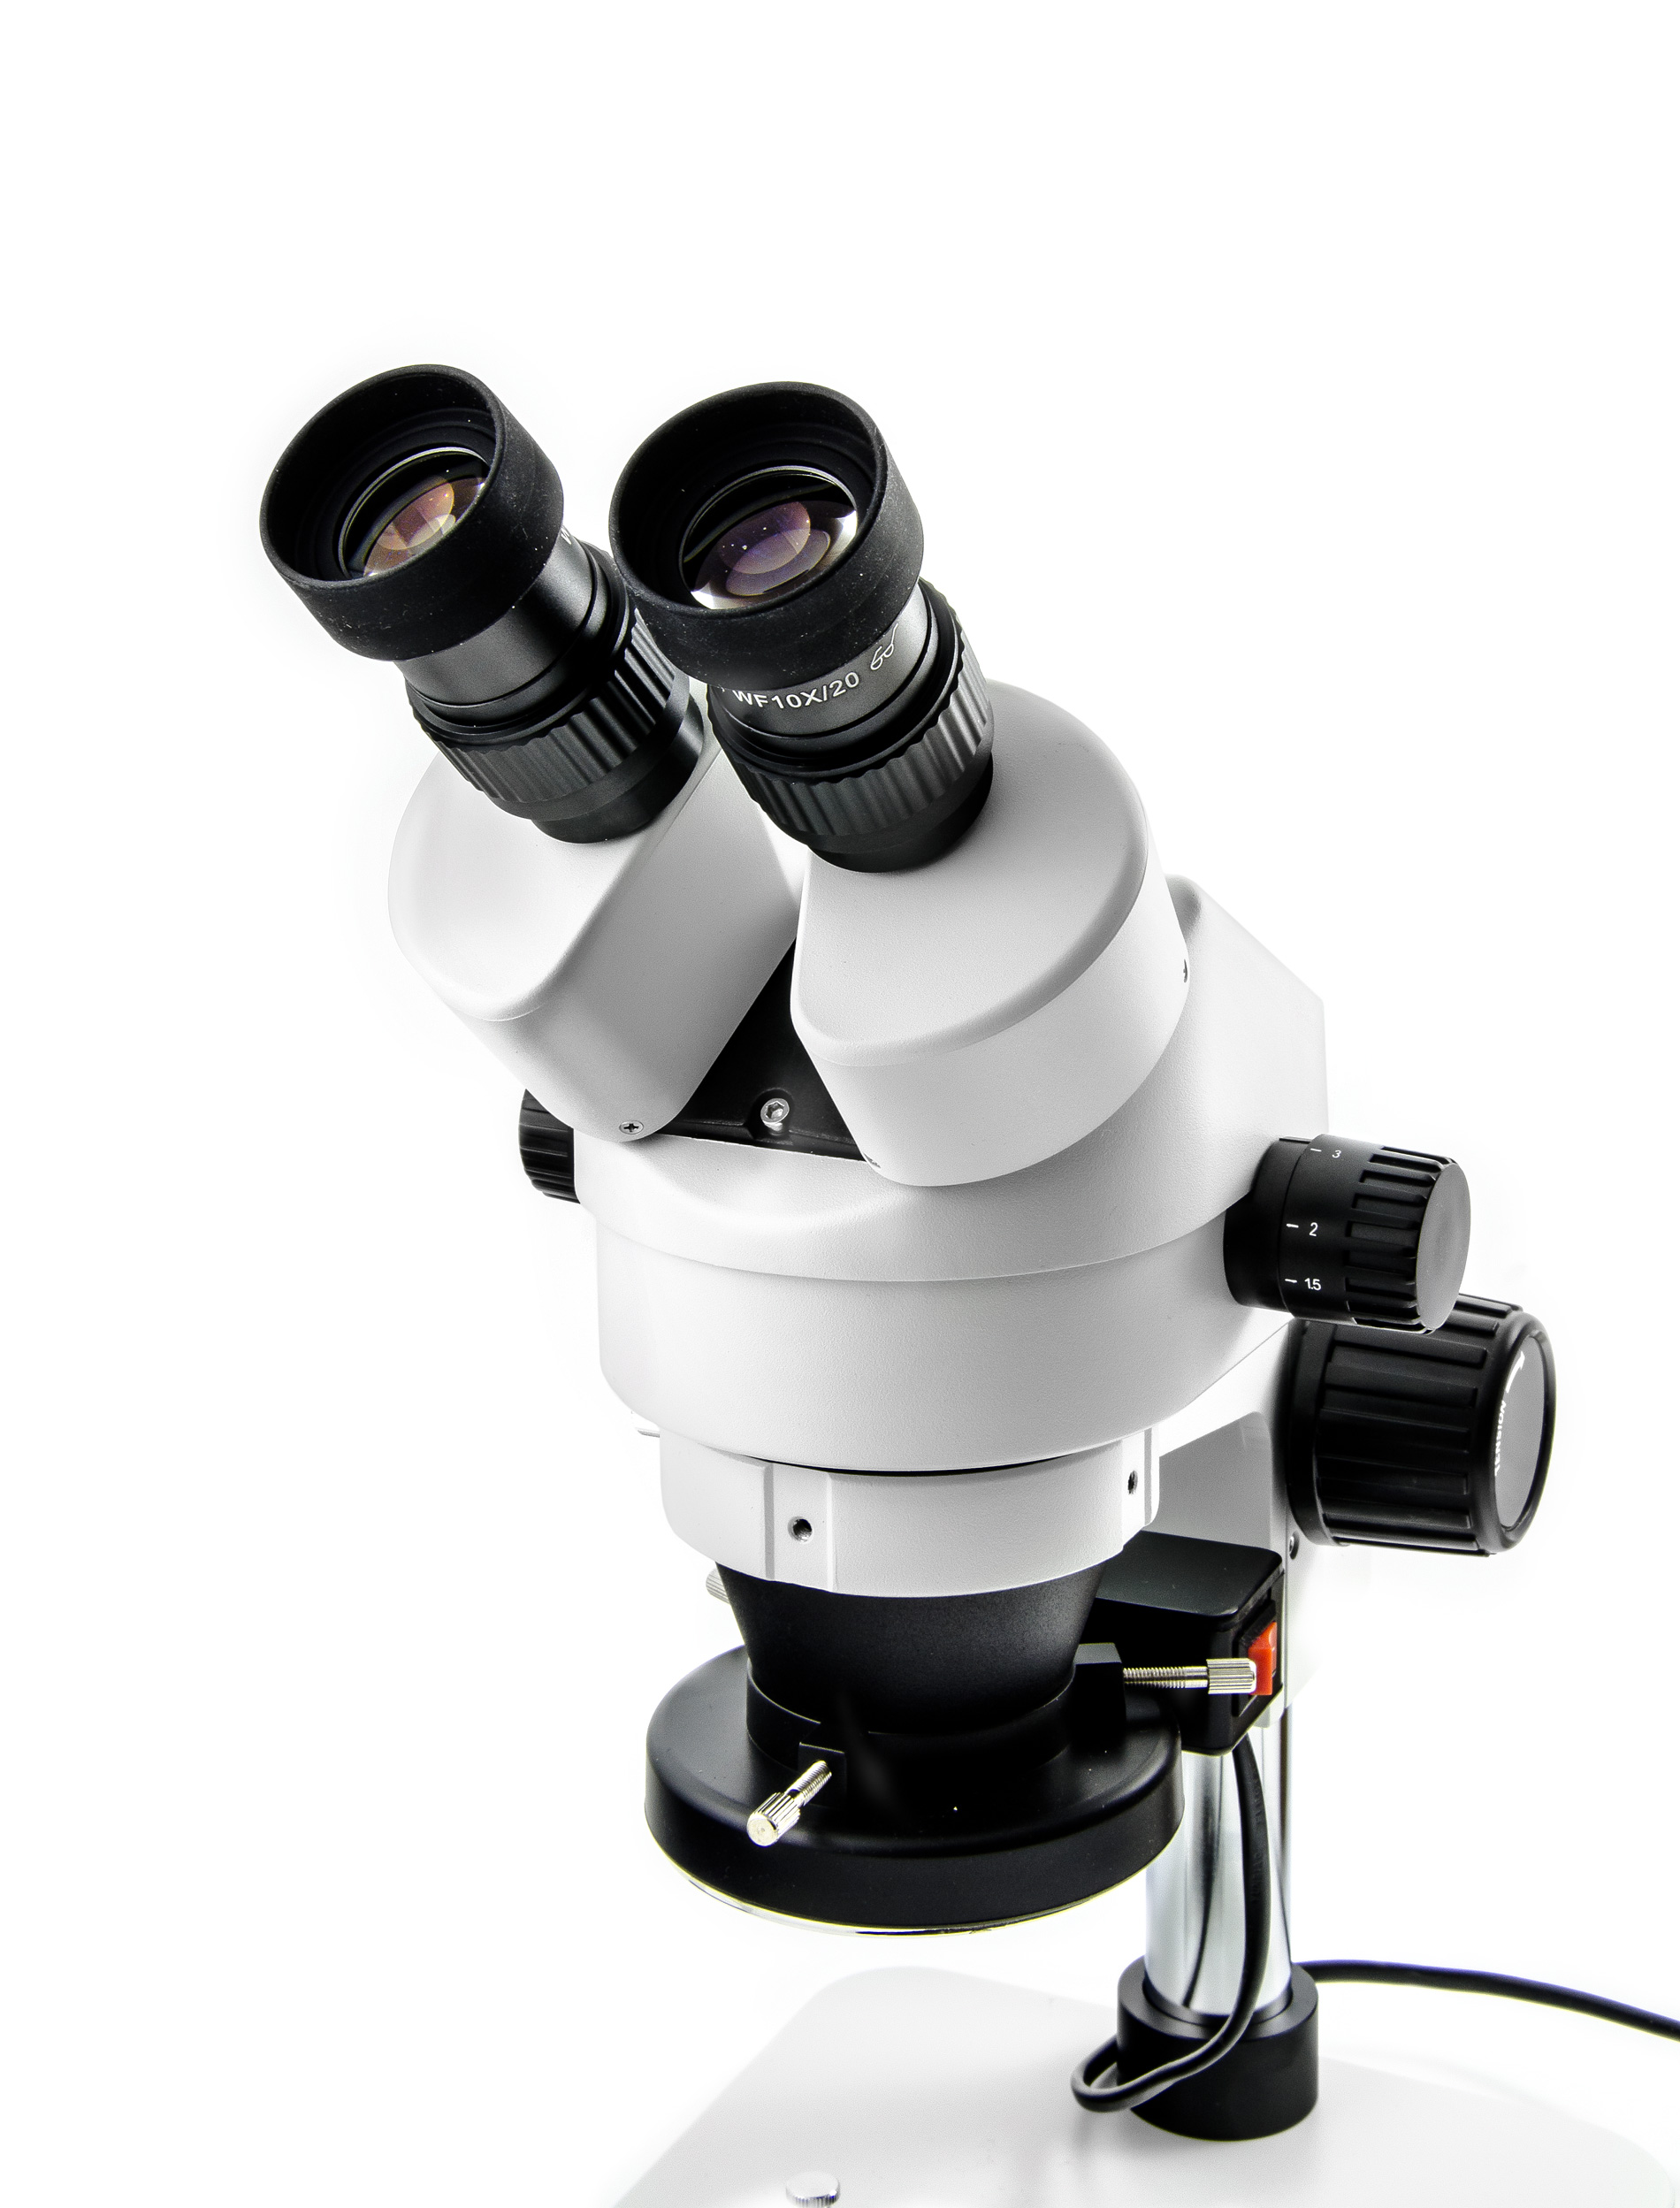 Stereoskopický profesionální mikroskop Yaxun YX-AK10 se zvětšením 7 - 45x